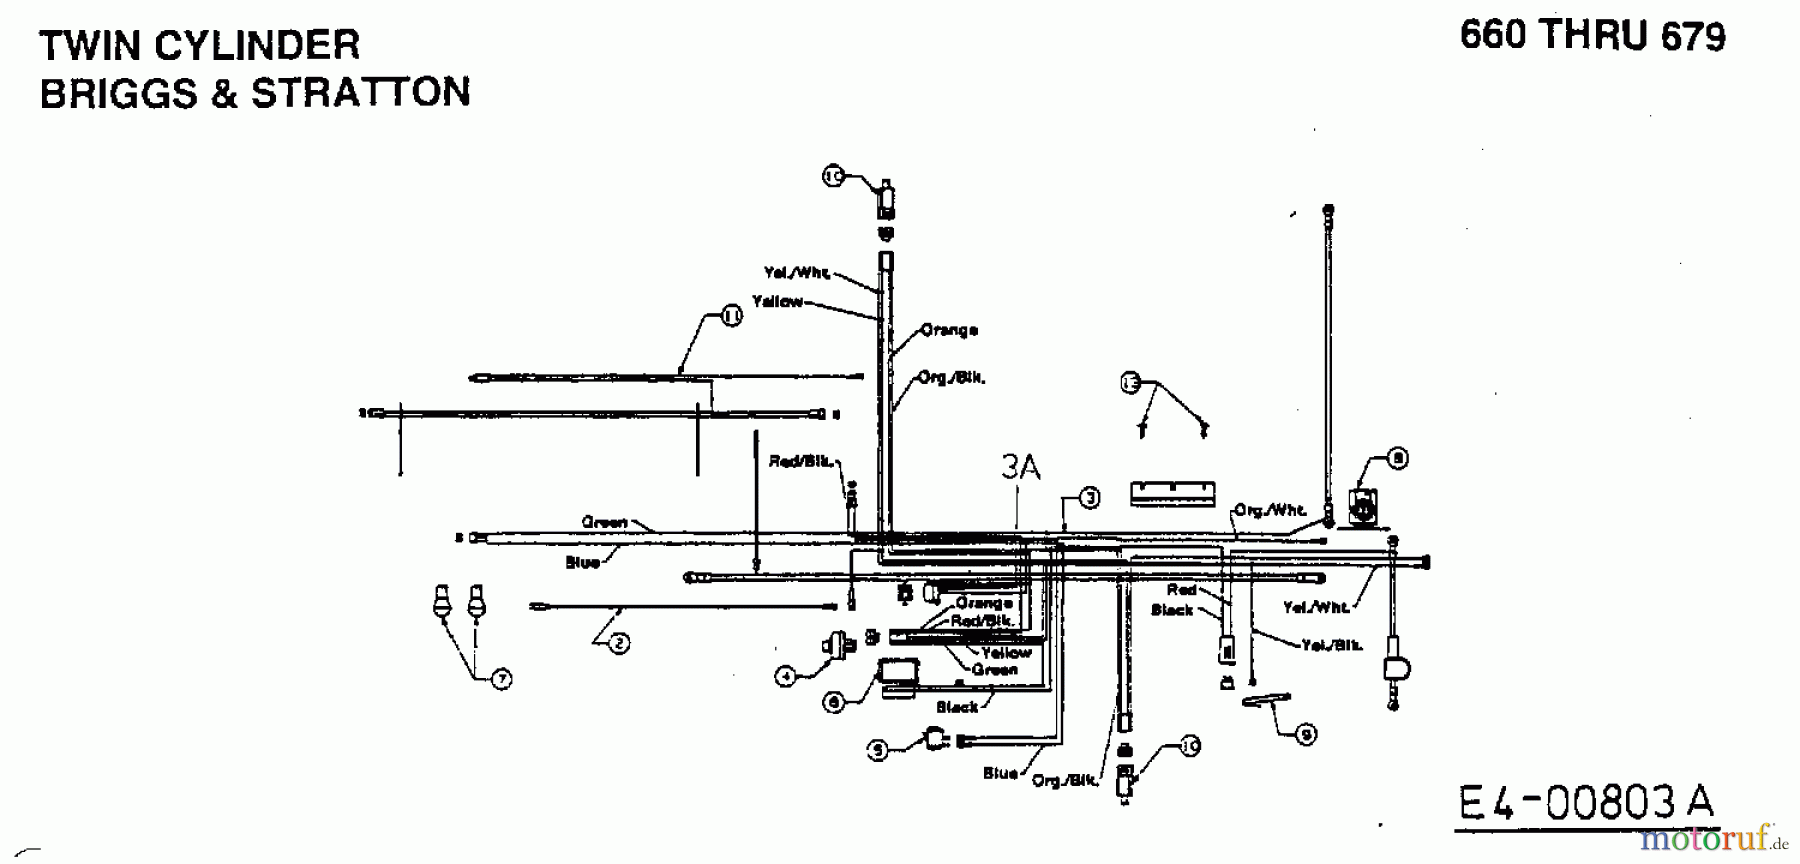  MTD Tracteurs de pelouse H 125 13AH690F678  (1998) Plan électrique 2 cylindre